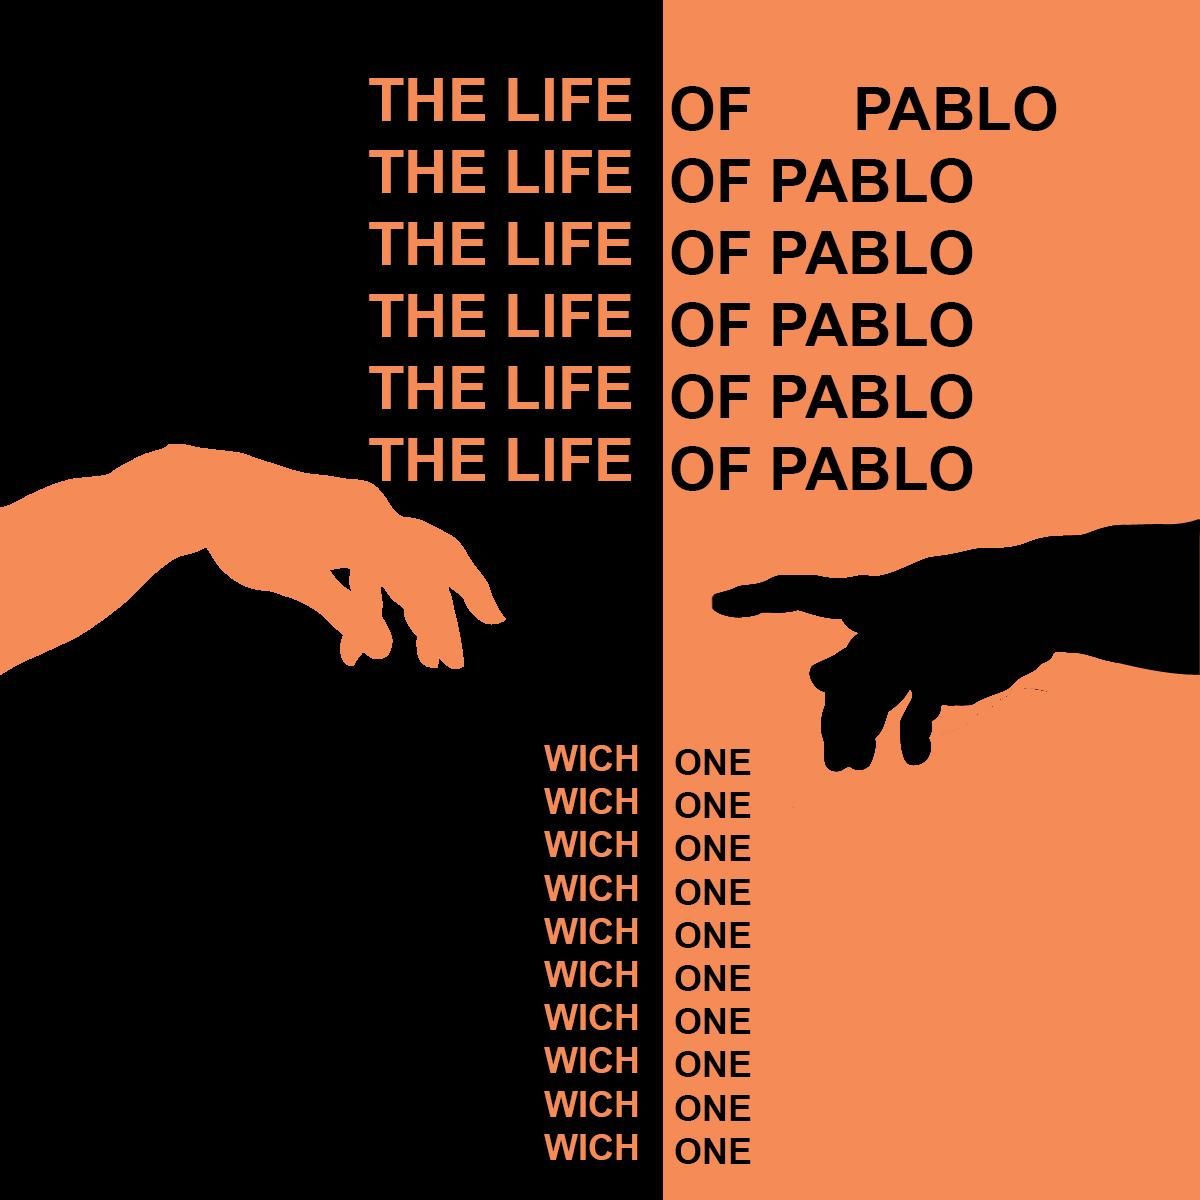 Et c’est déjà ce que nous suggère la cover de l’album avec la phrase répétitive affiché comme un bug informatique, « Which / One », lequel des Pablo sera le personnage que Kanye West essaye de nous faire croire qu’il est.